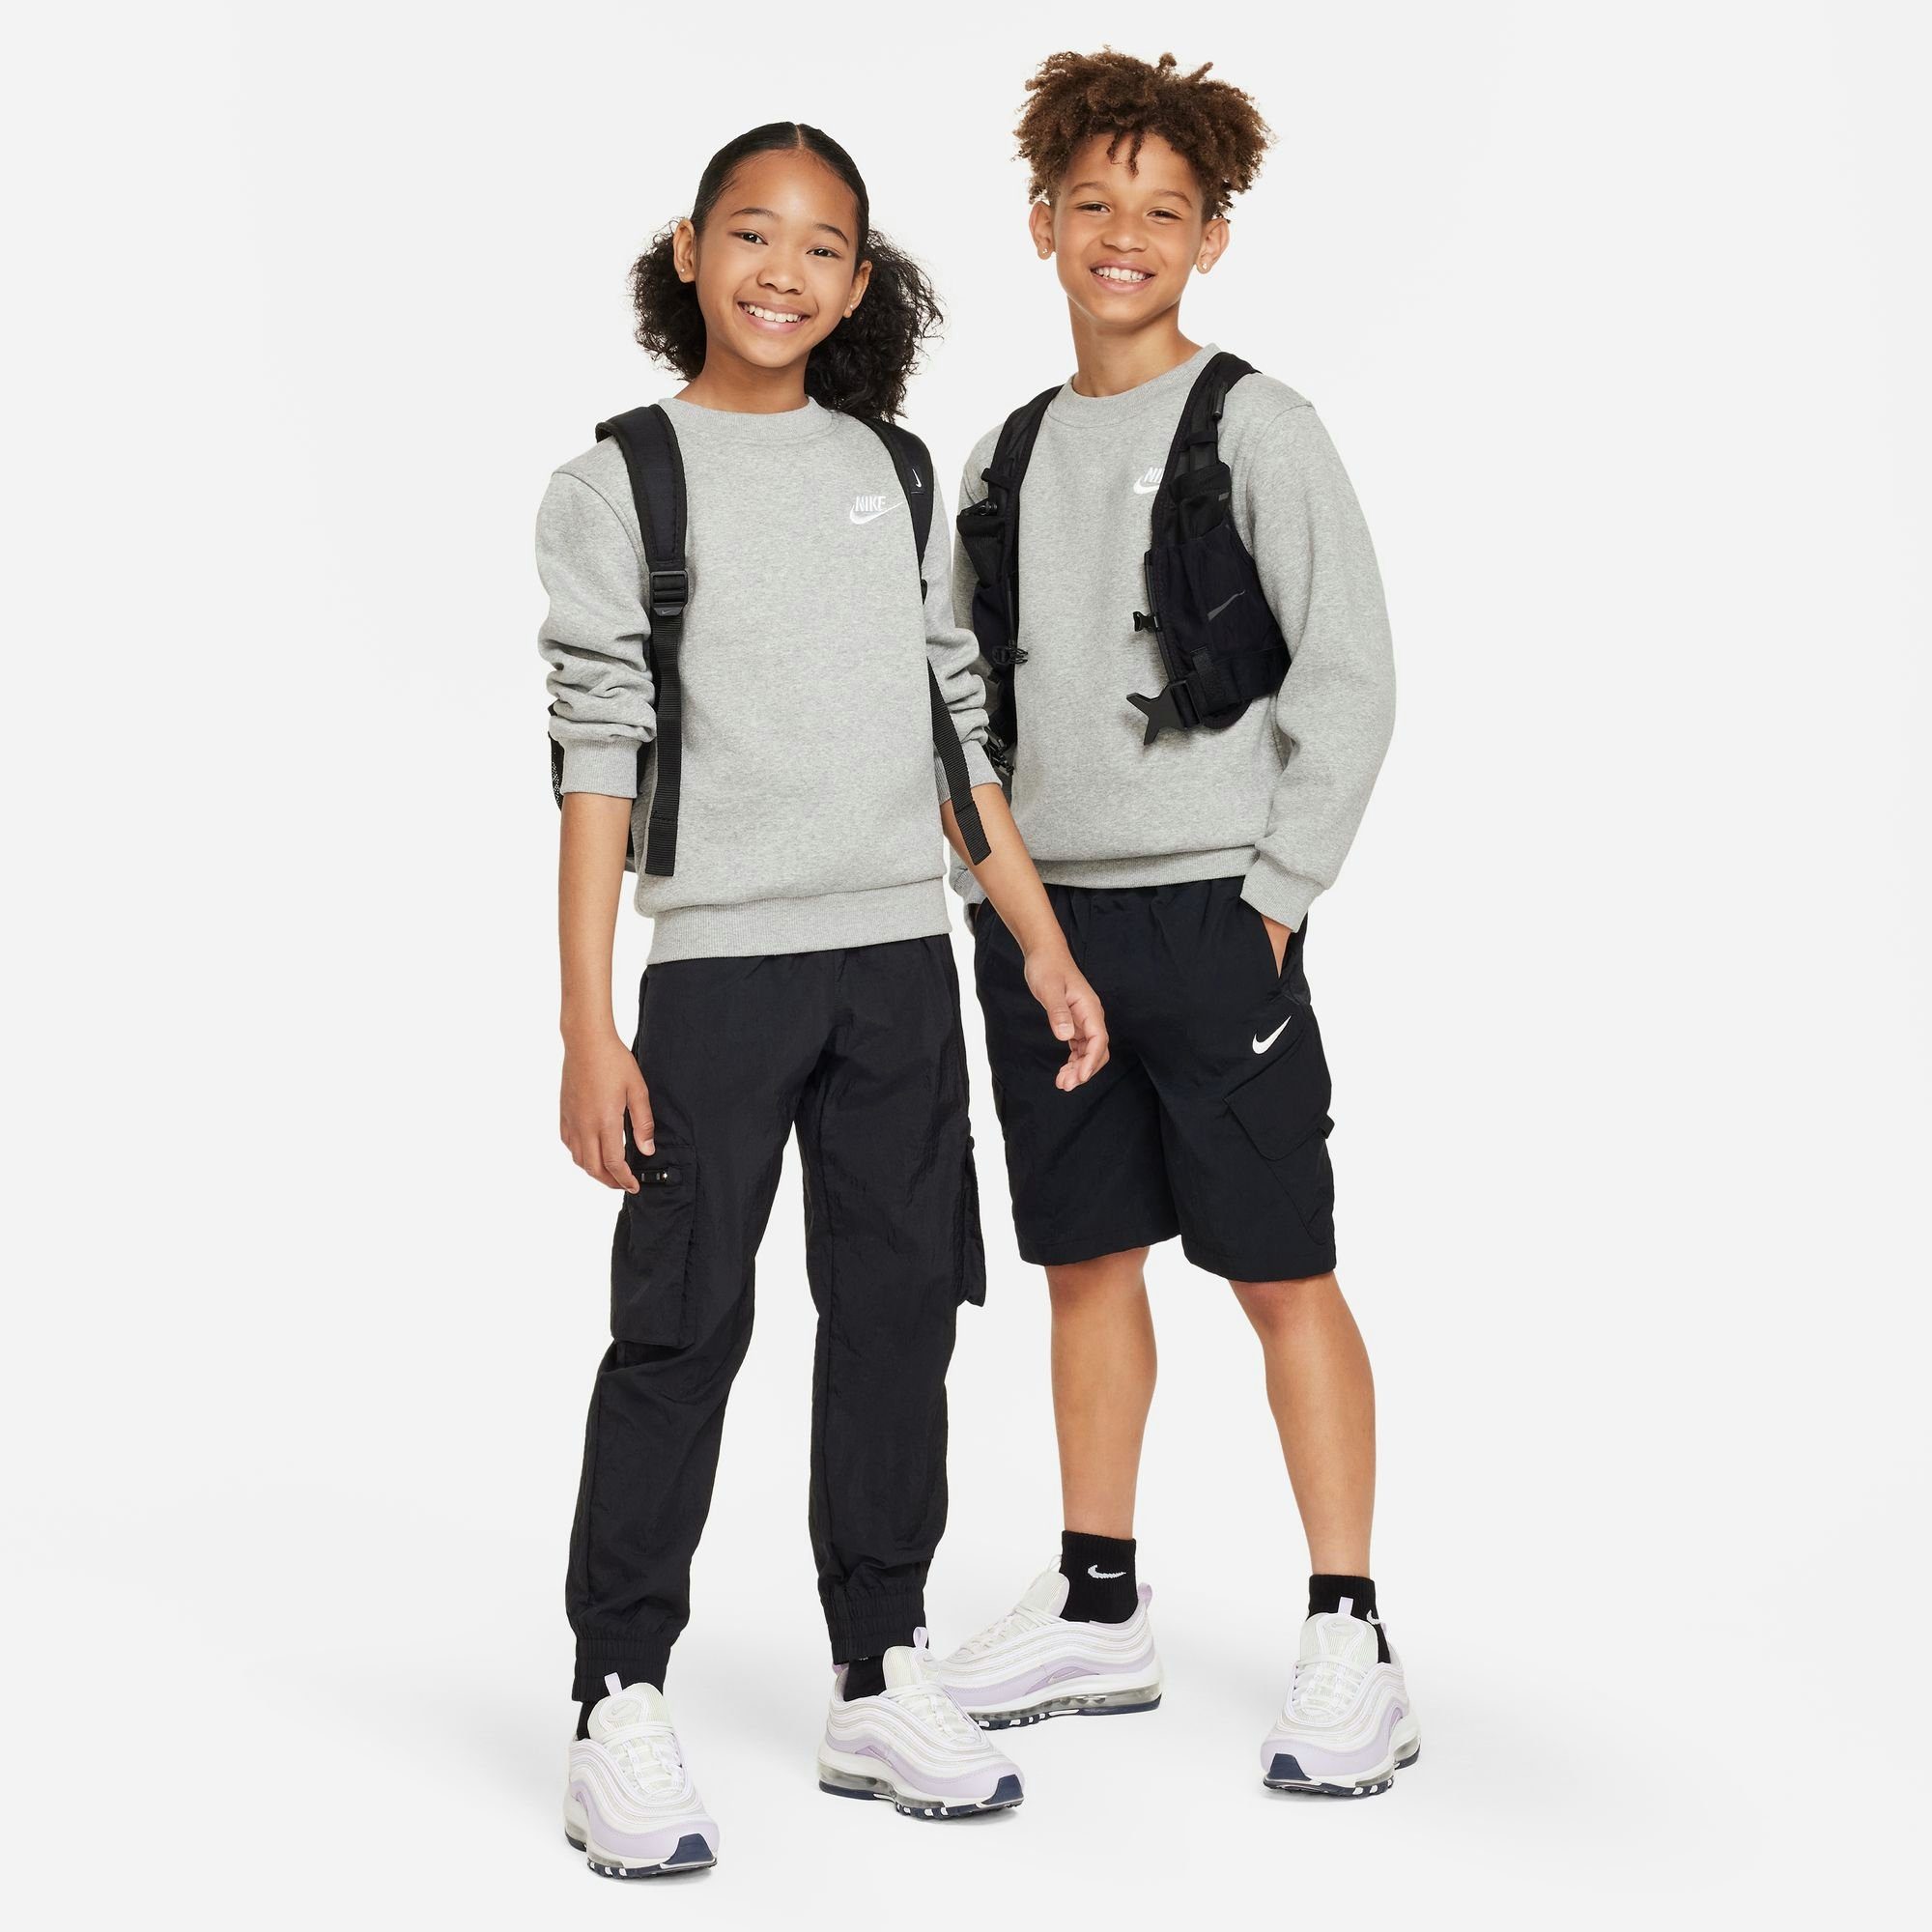 SWEATSHIRT KIDS' Sportswear GREY FLEECE CLUB Nike Sweatshirt HEATHER/WHITE BIG DK